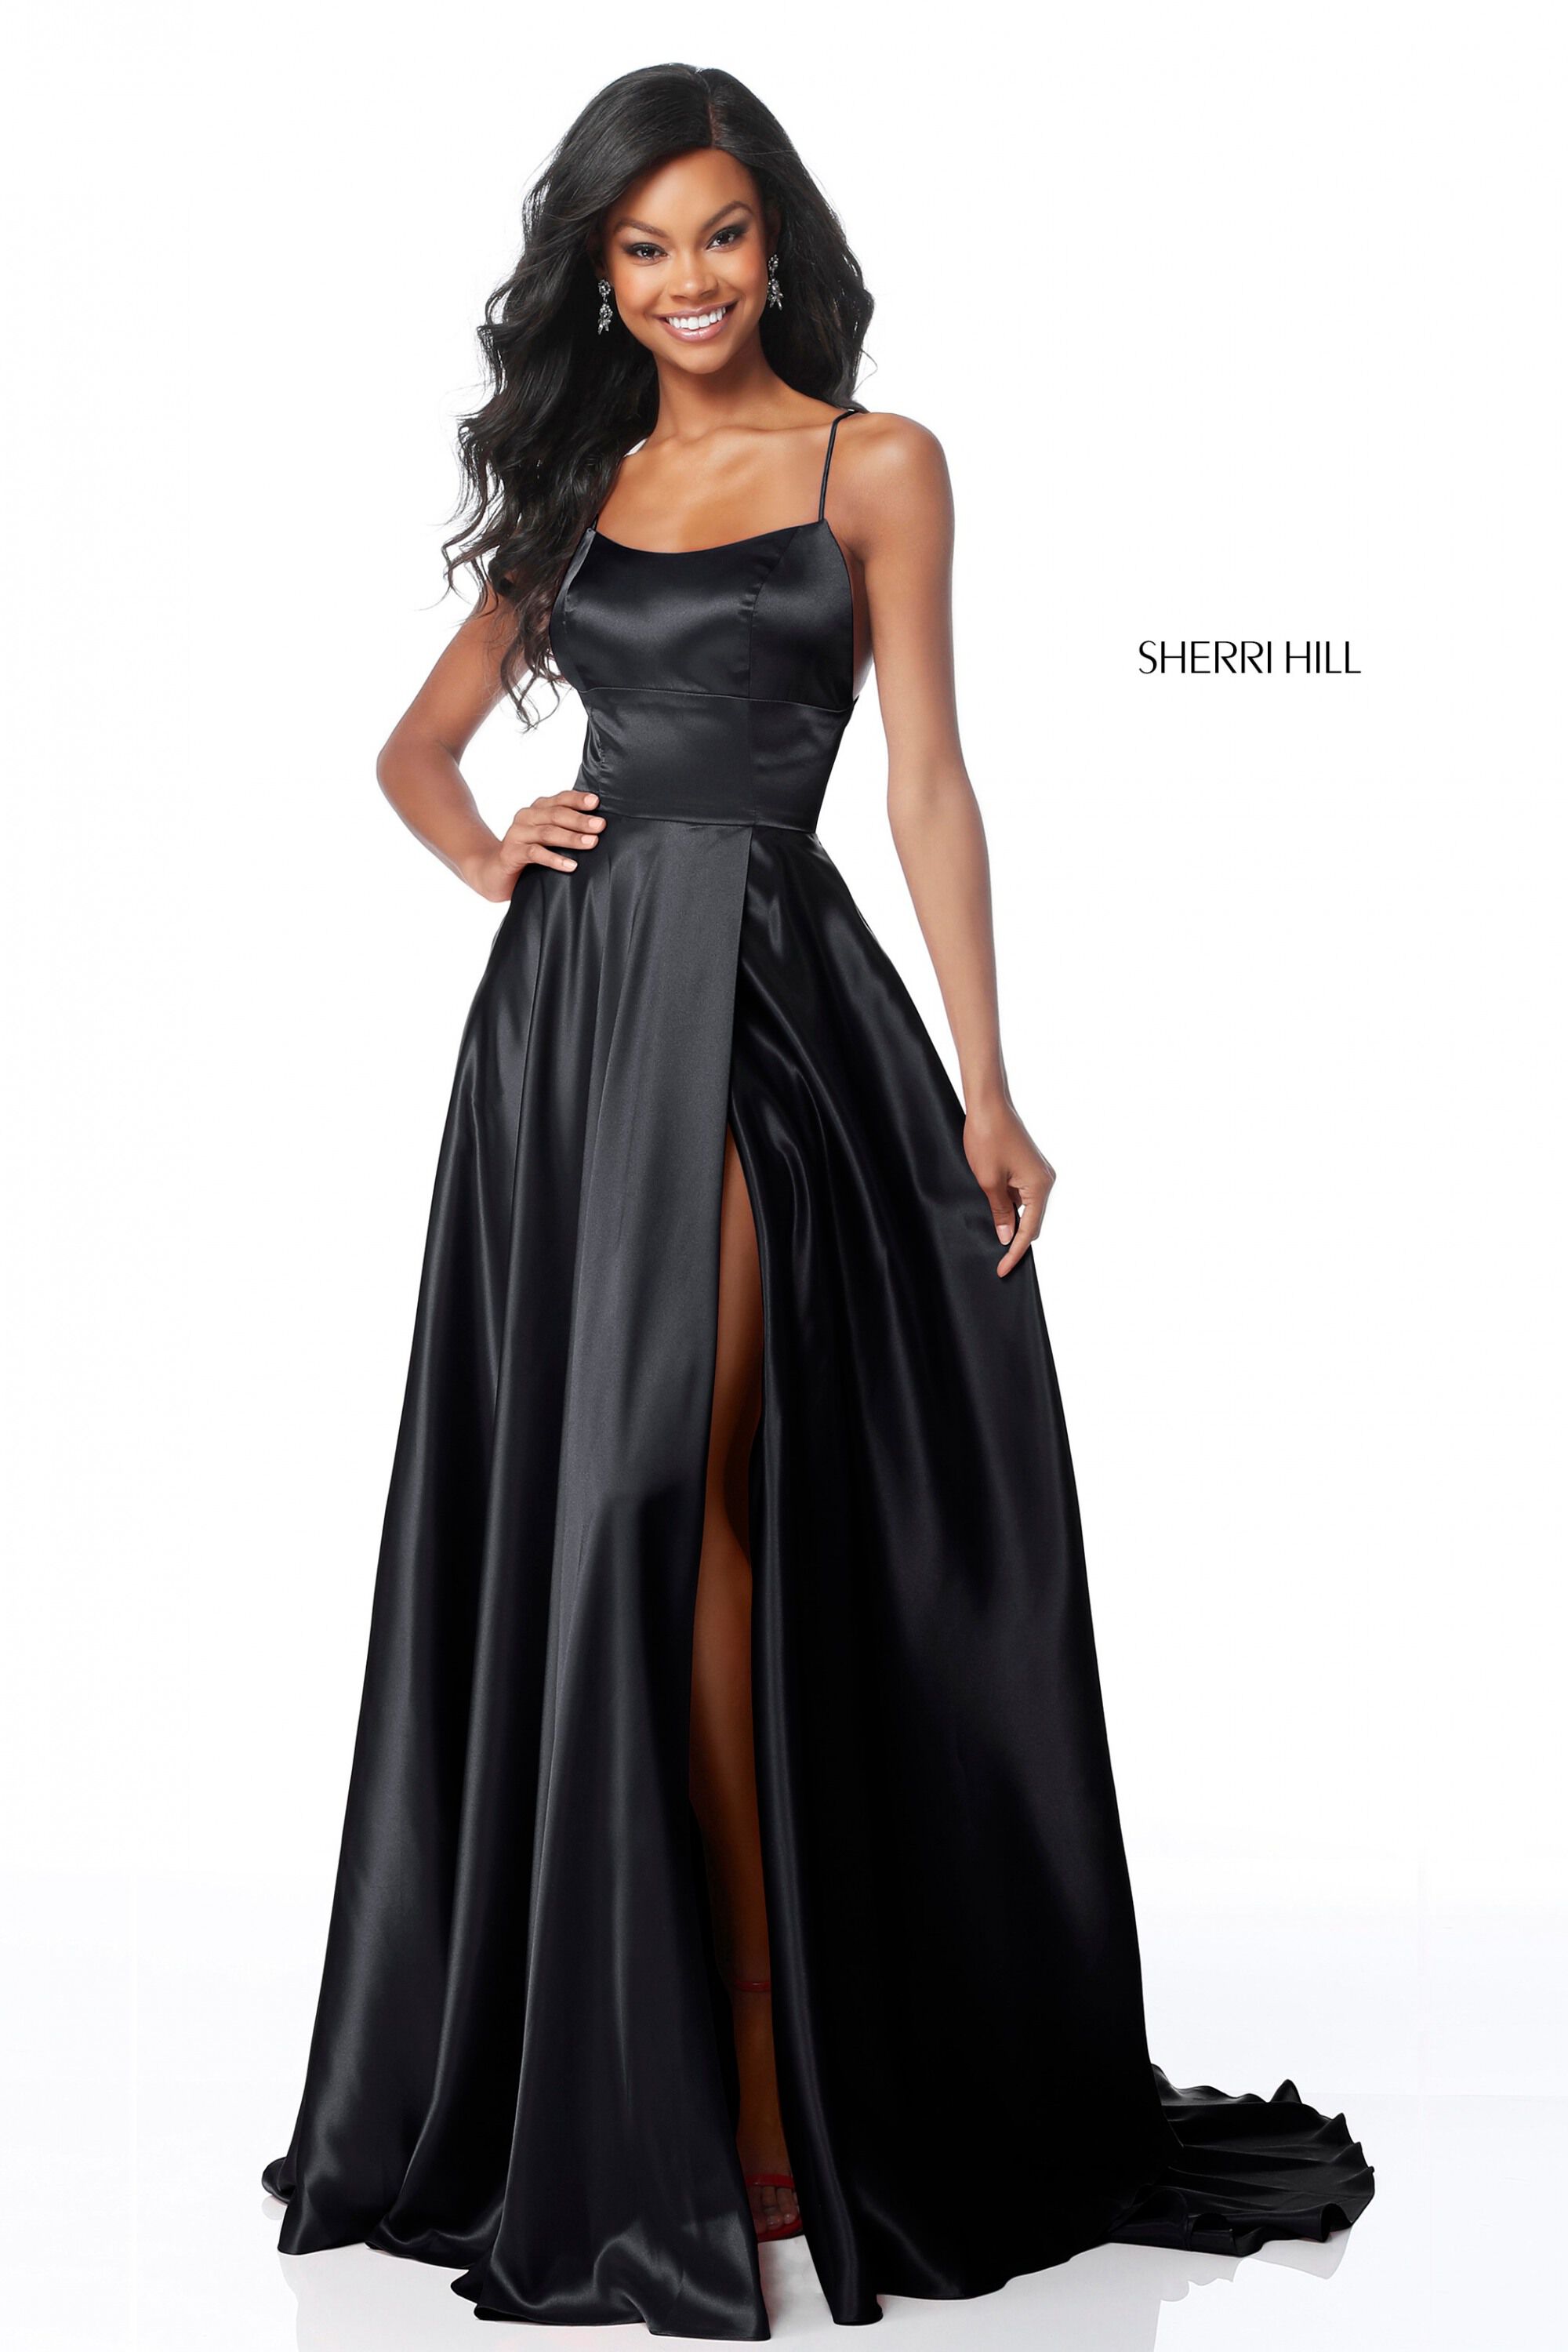 sherri hill black dress